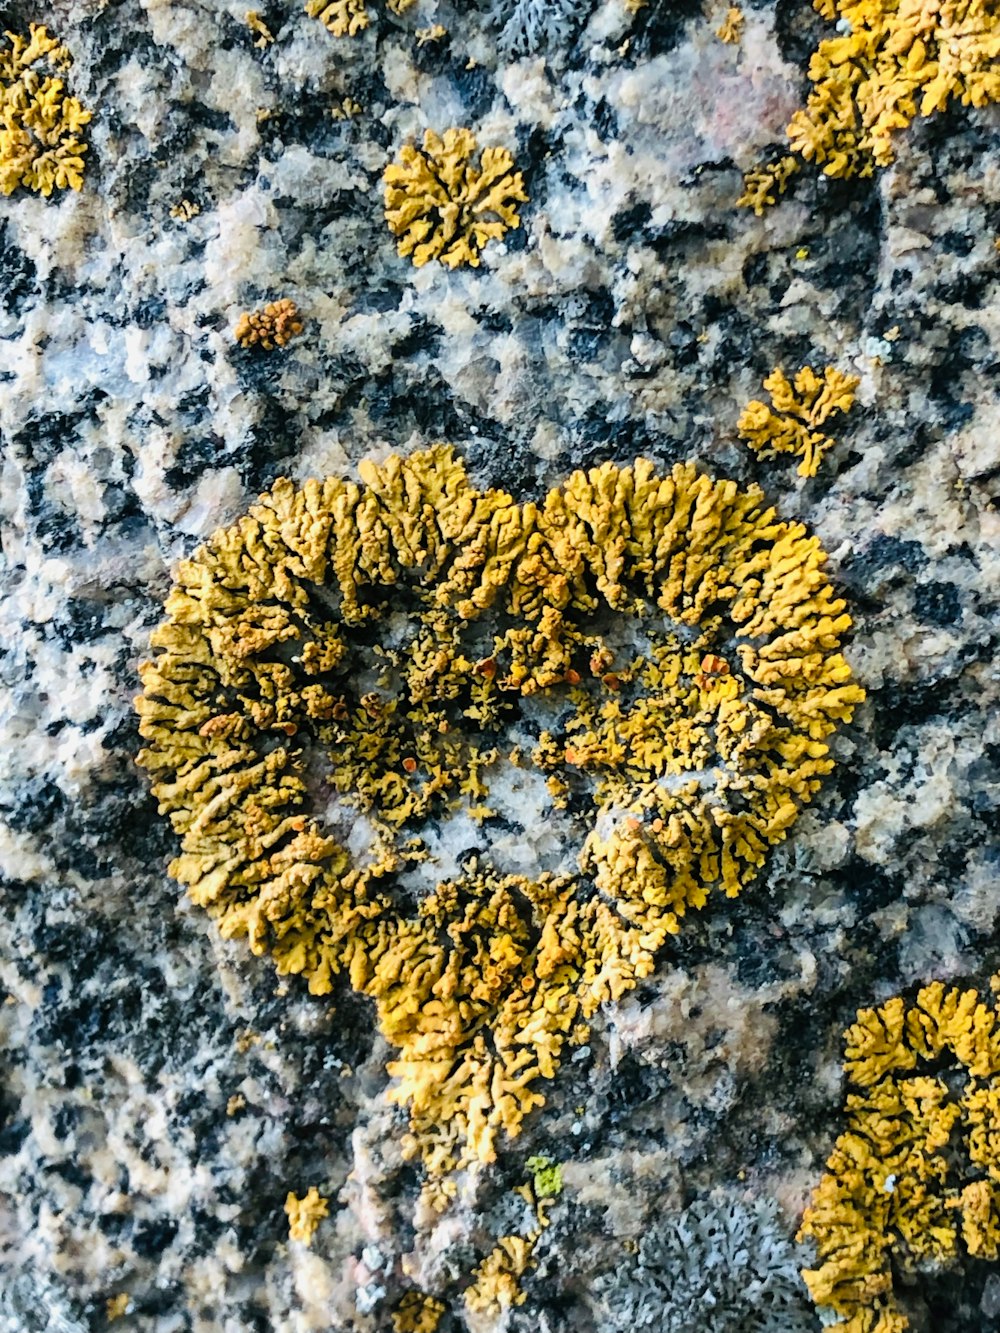 Un primer plano de una roca con musgo amarillo creciendo en ella